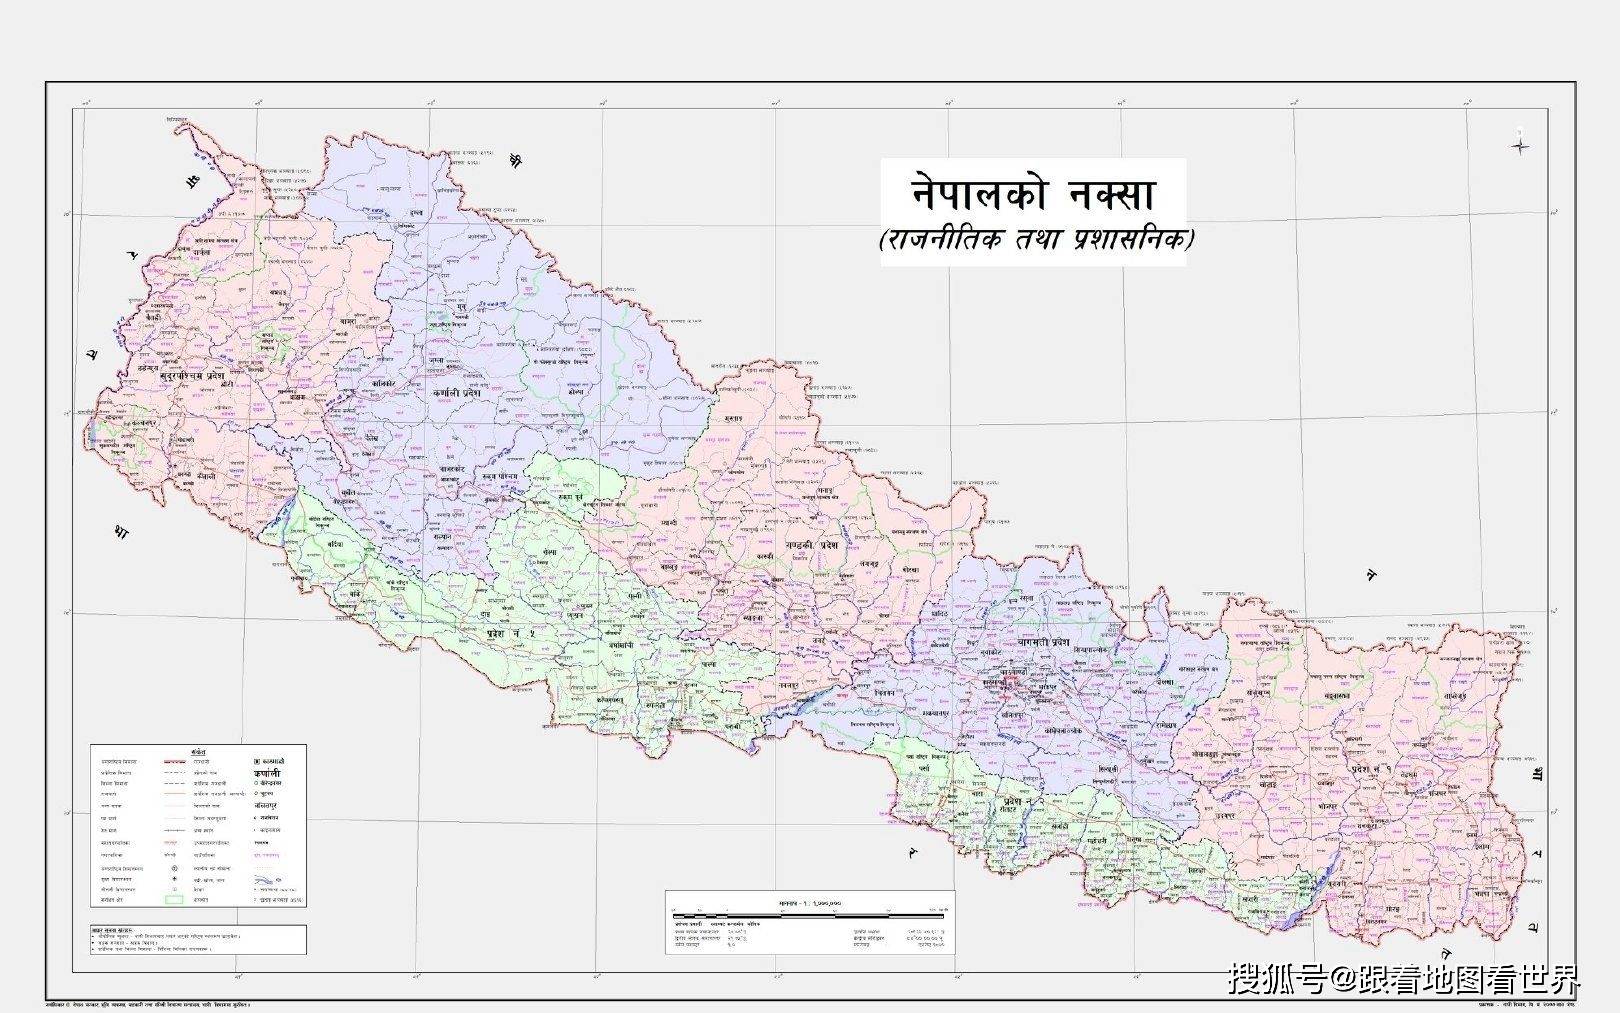 改地图,换名称:印度与尼泊尔的百年历史恩怨和领土争议由来